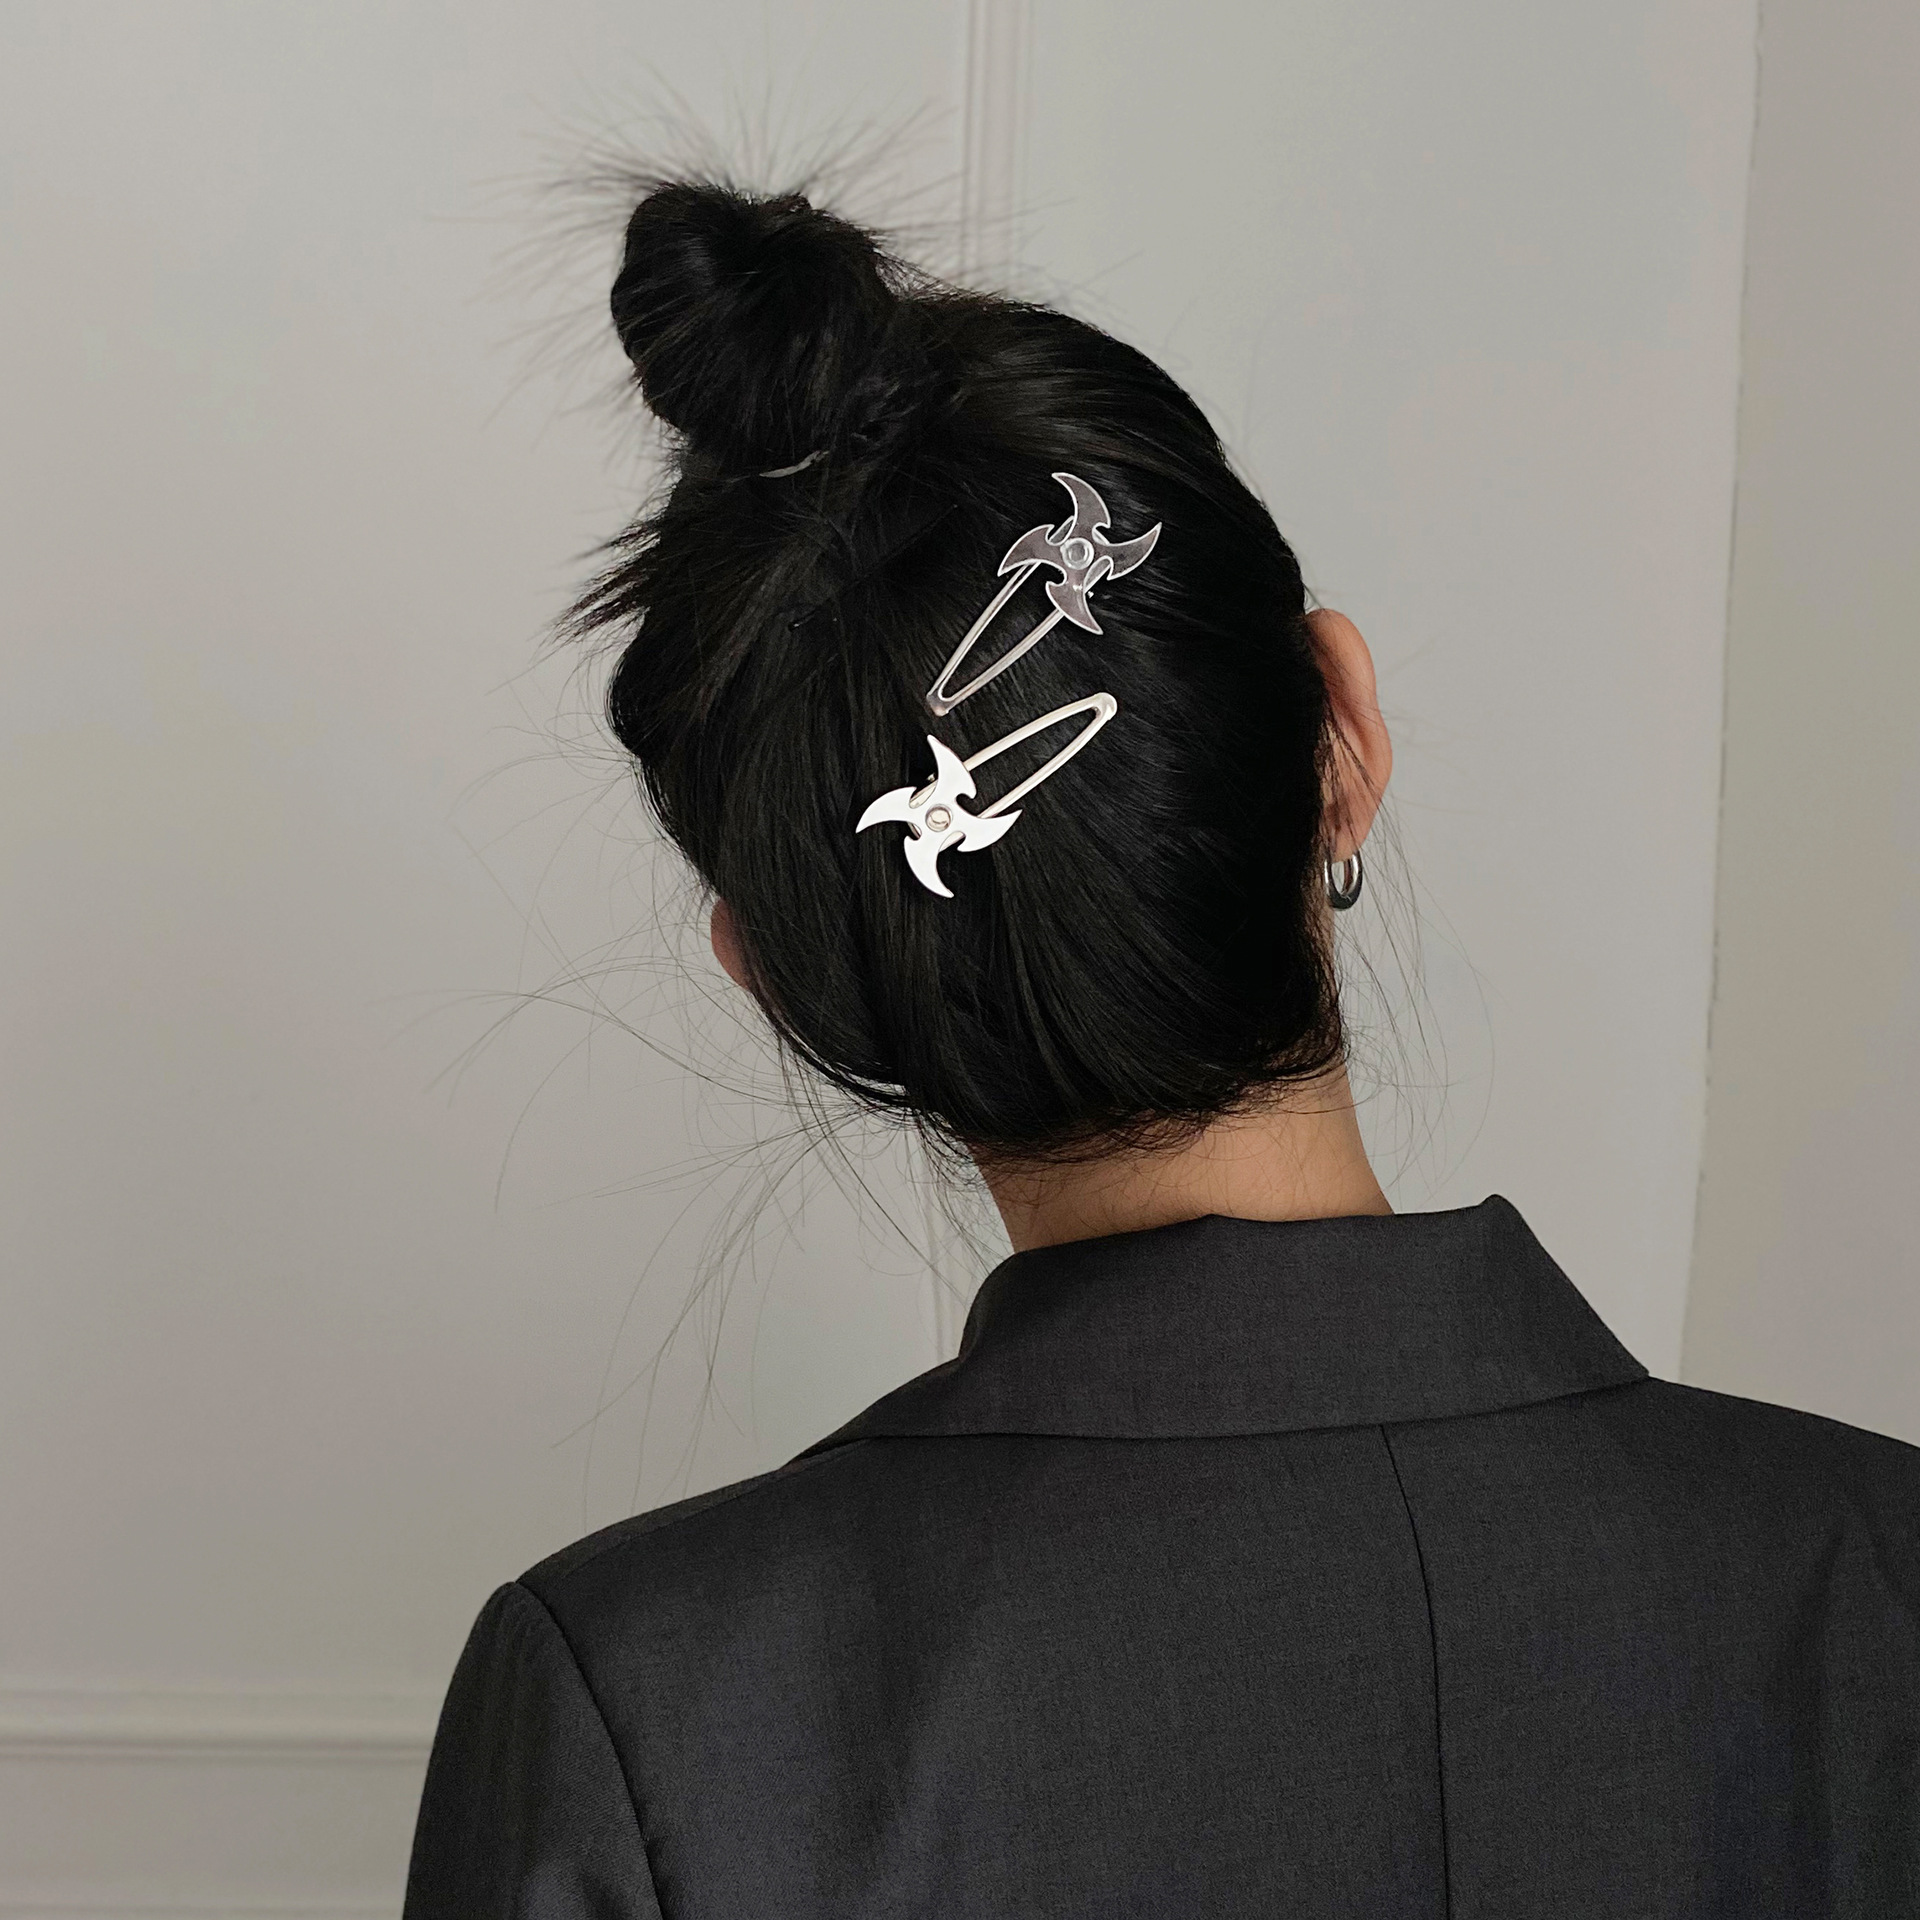 Mua càng nhiều càng giảm giá Kẹp tóc phi tiêu phong cách Harajuku hình boomerang cá tính cô gái tối mát nhỏ giá trị cao